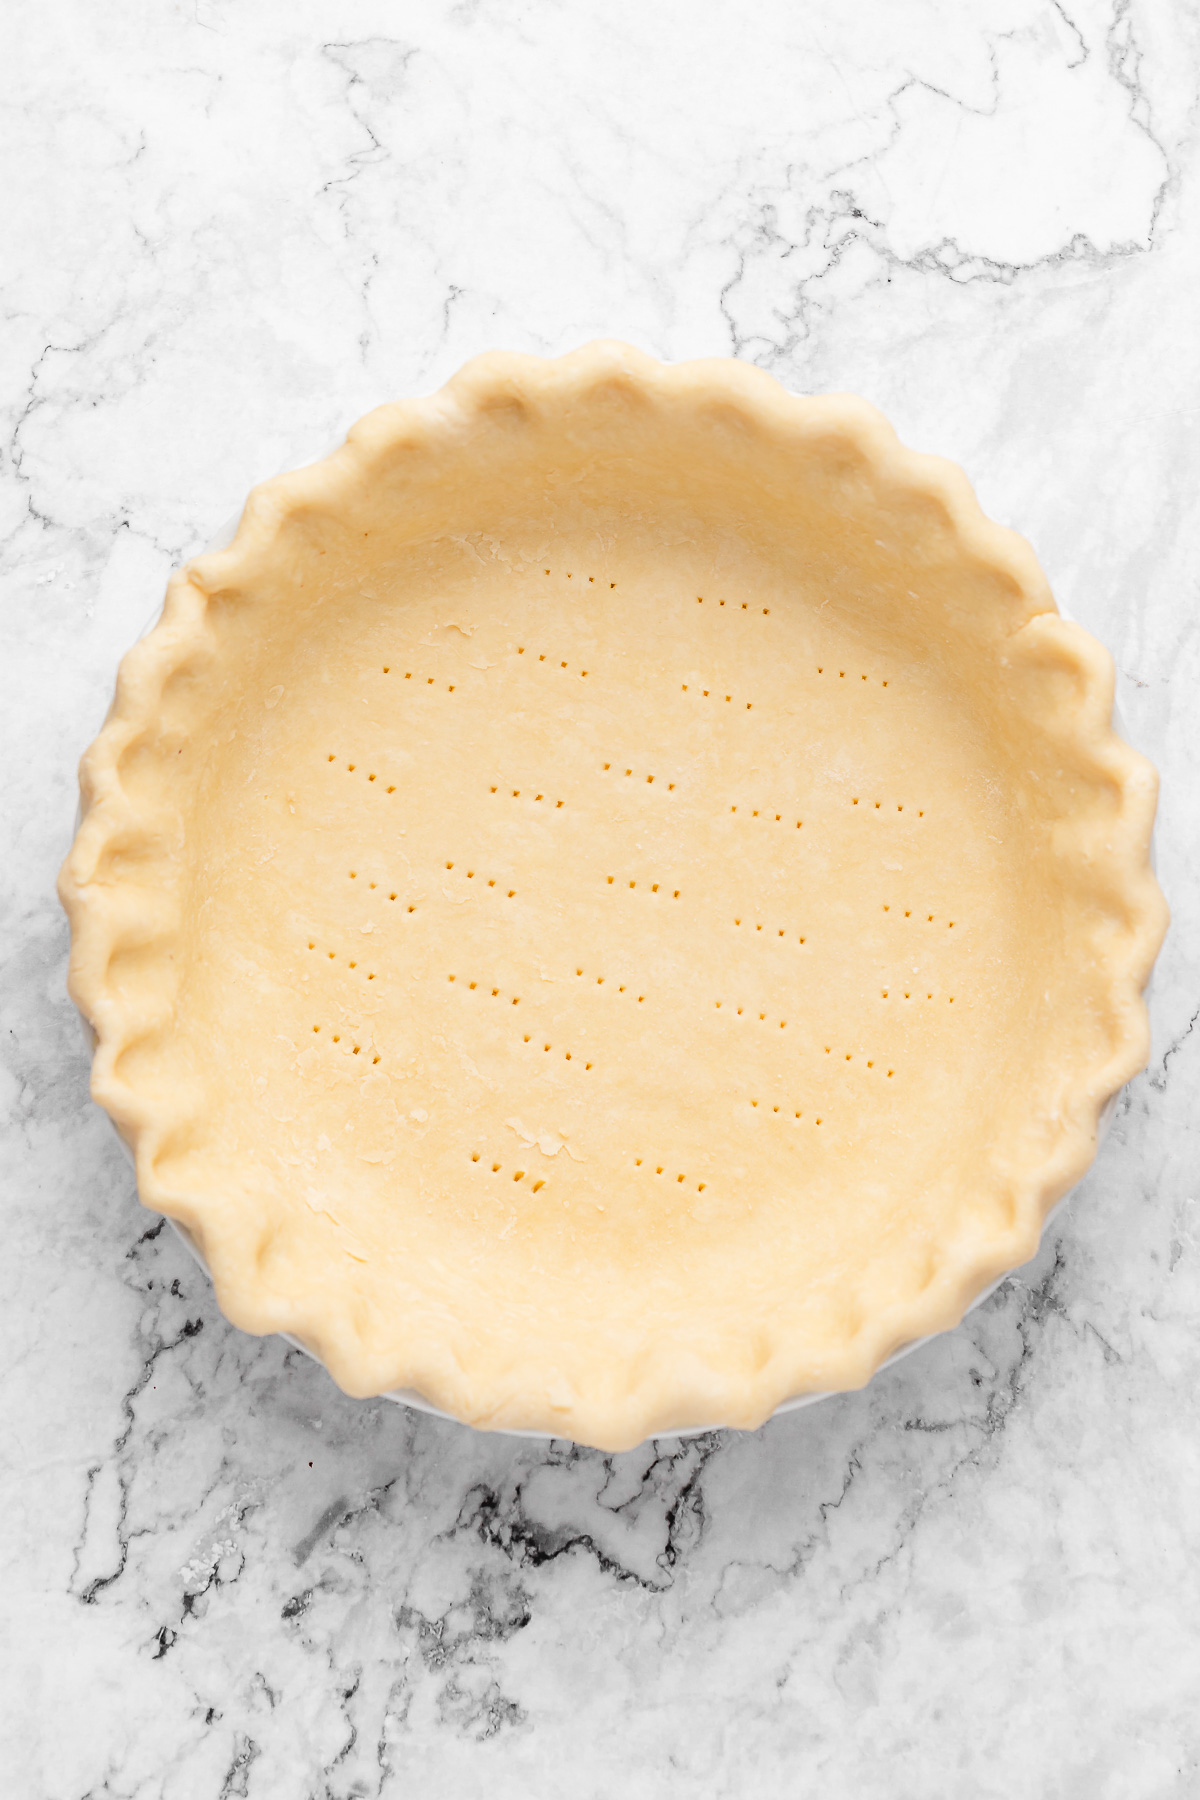 Pie crust in pan